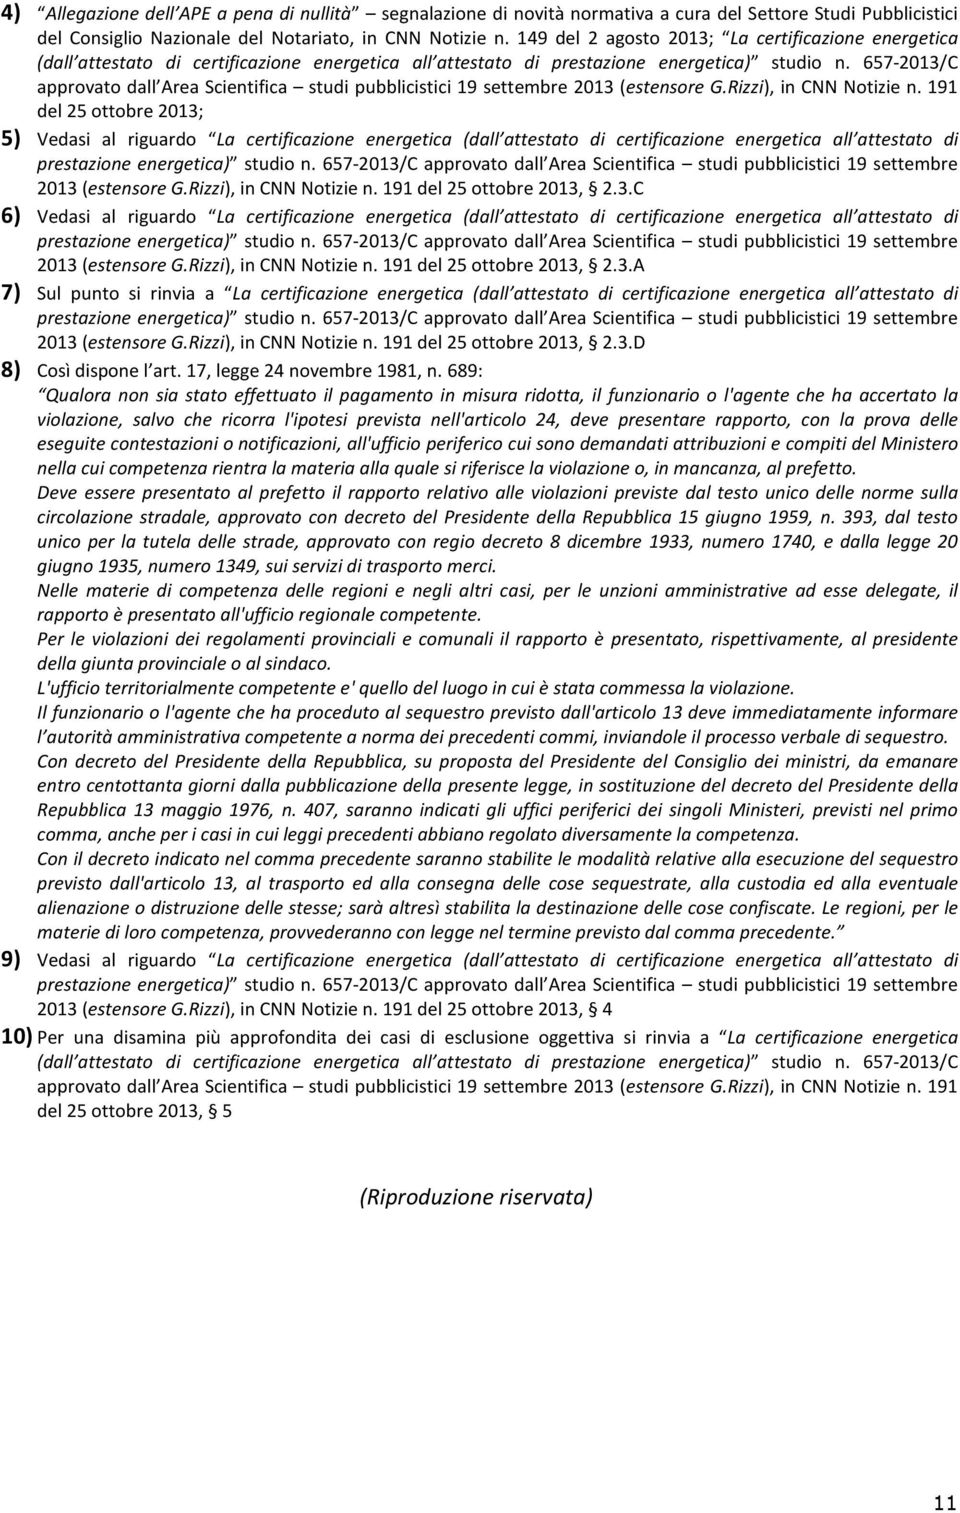 657-2013/C approvato dall Area Scientifica studi pubblicistici 19 settembre 2013 (estensore G.Rizzi), in CNN Notizie n.